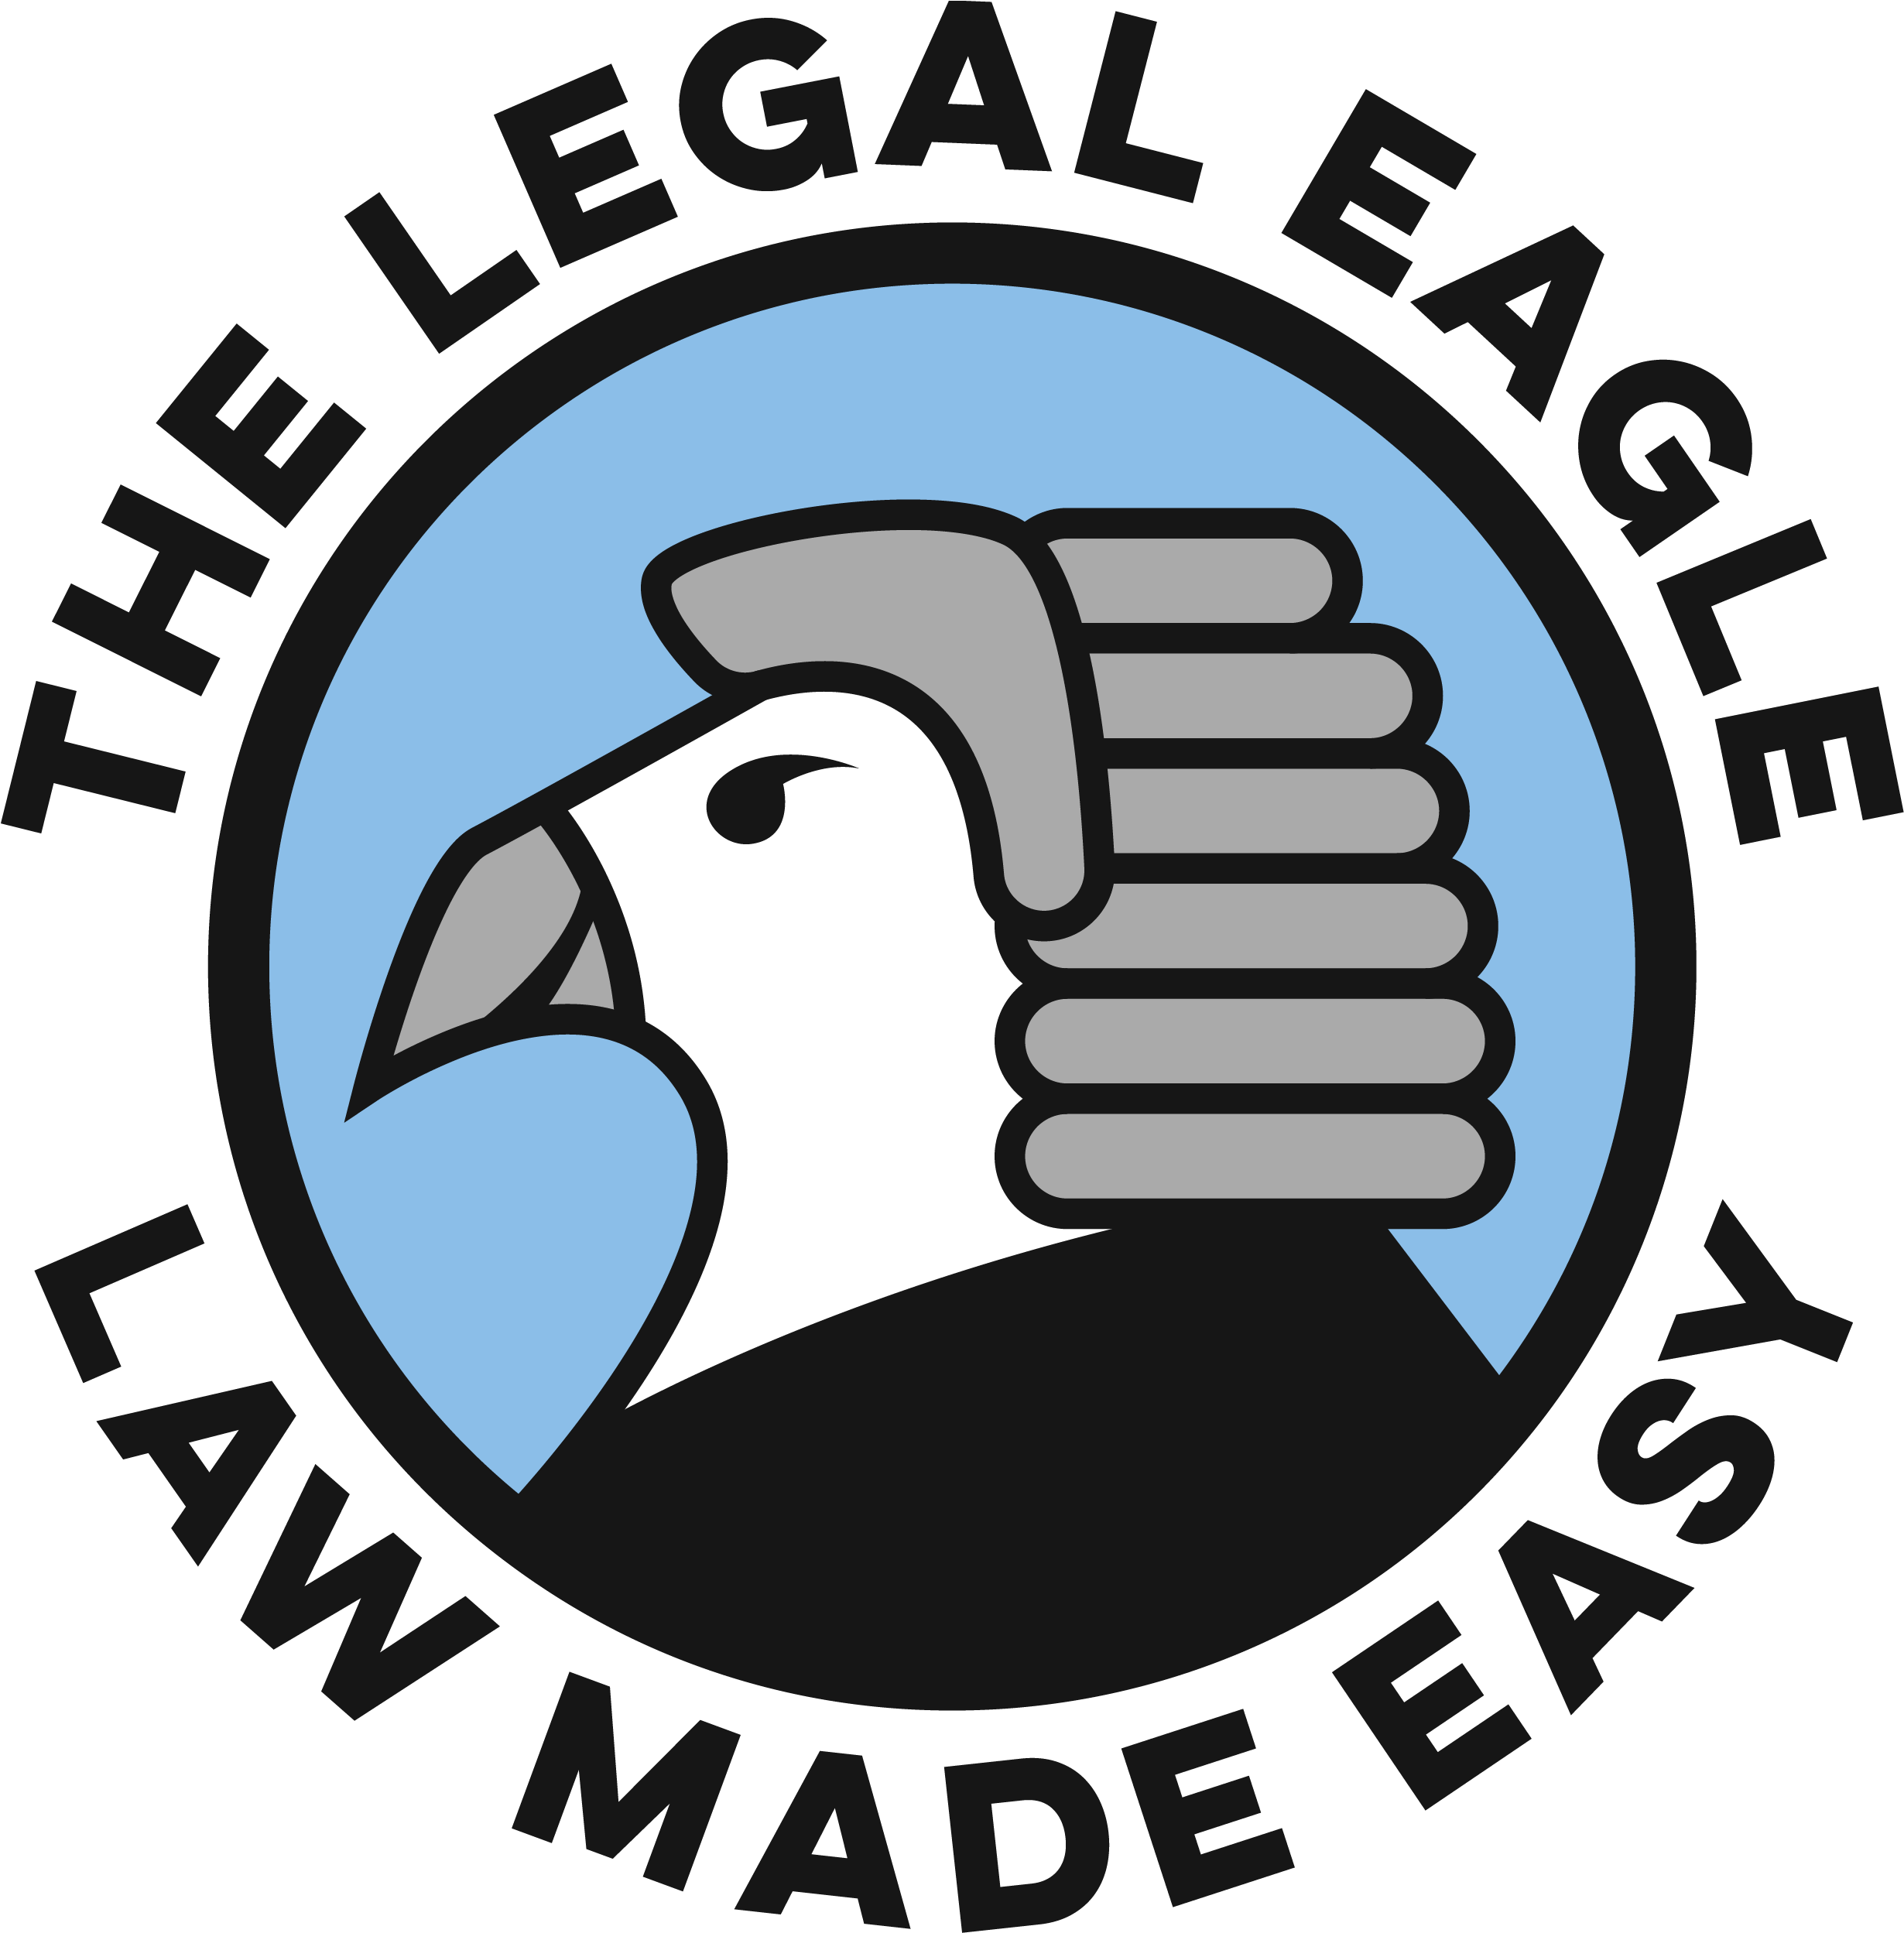 The Legal Eagle - Law Eagle (2500x2500)